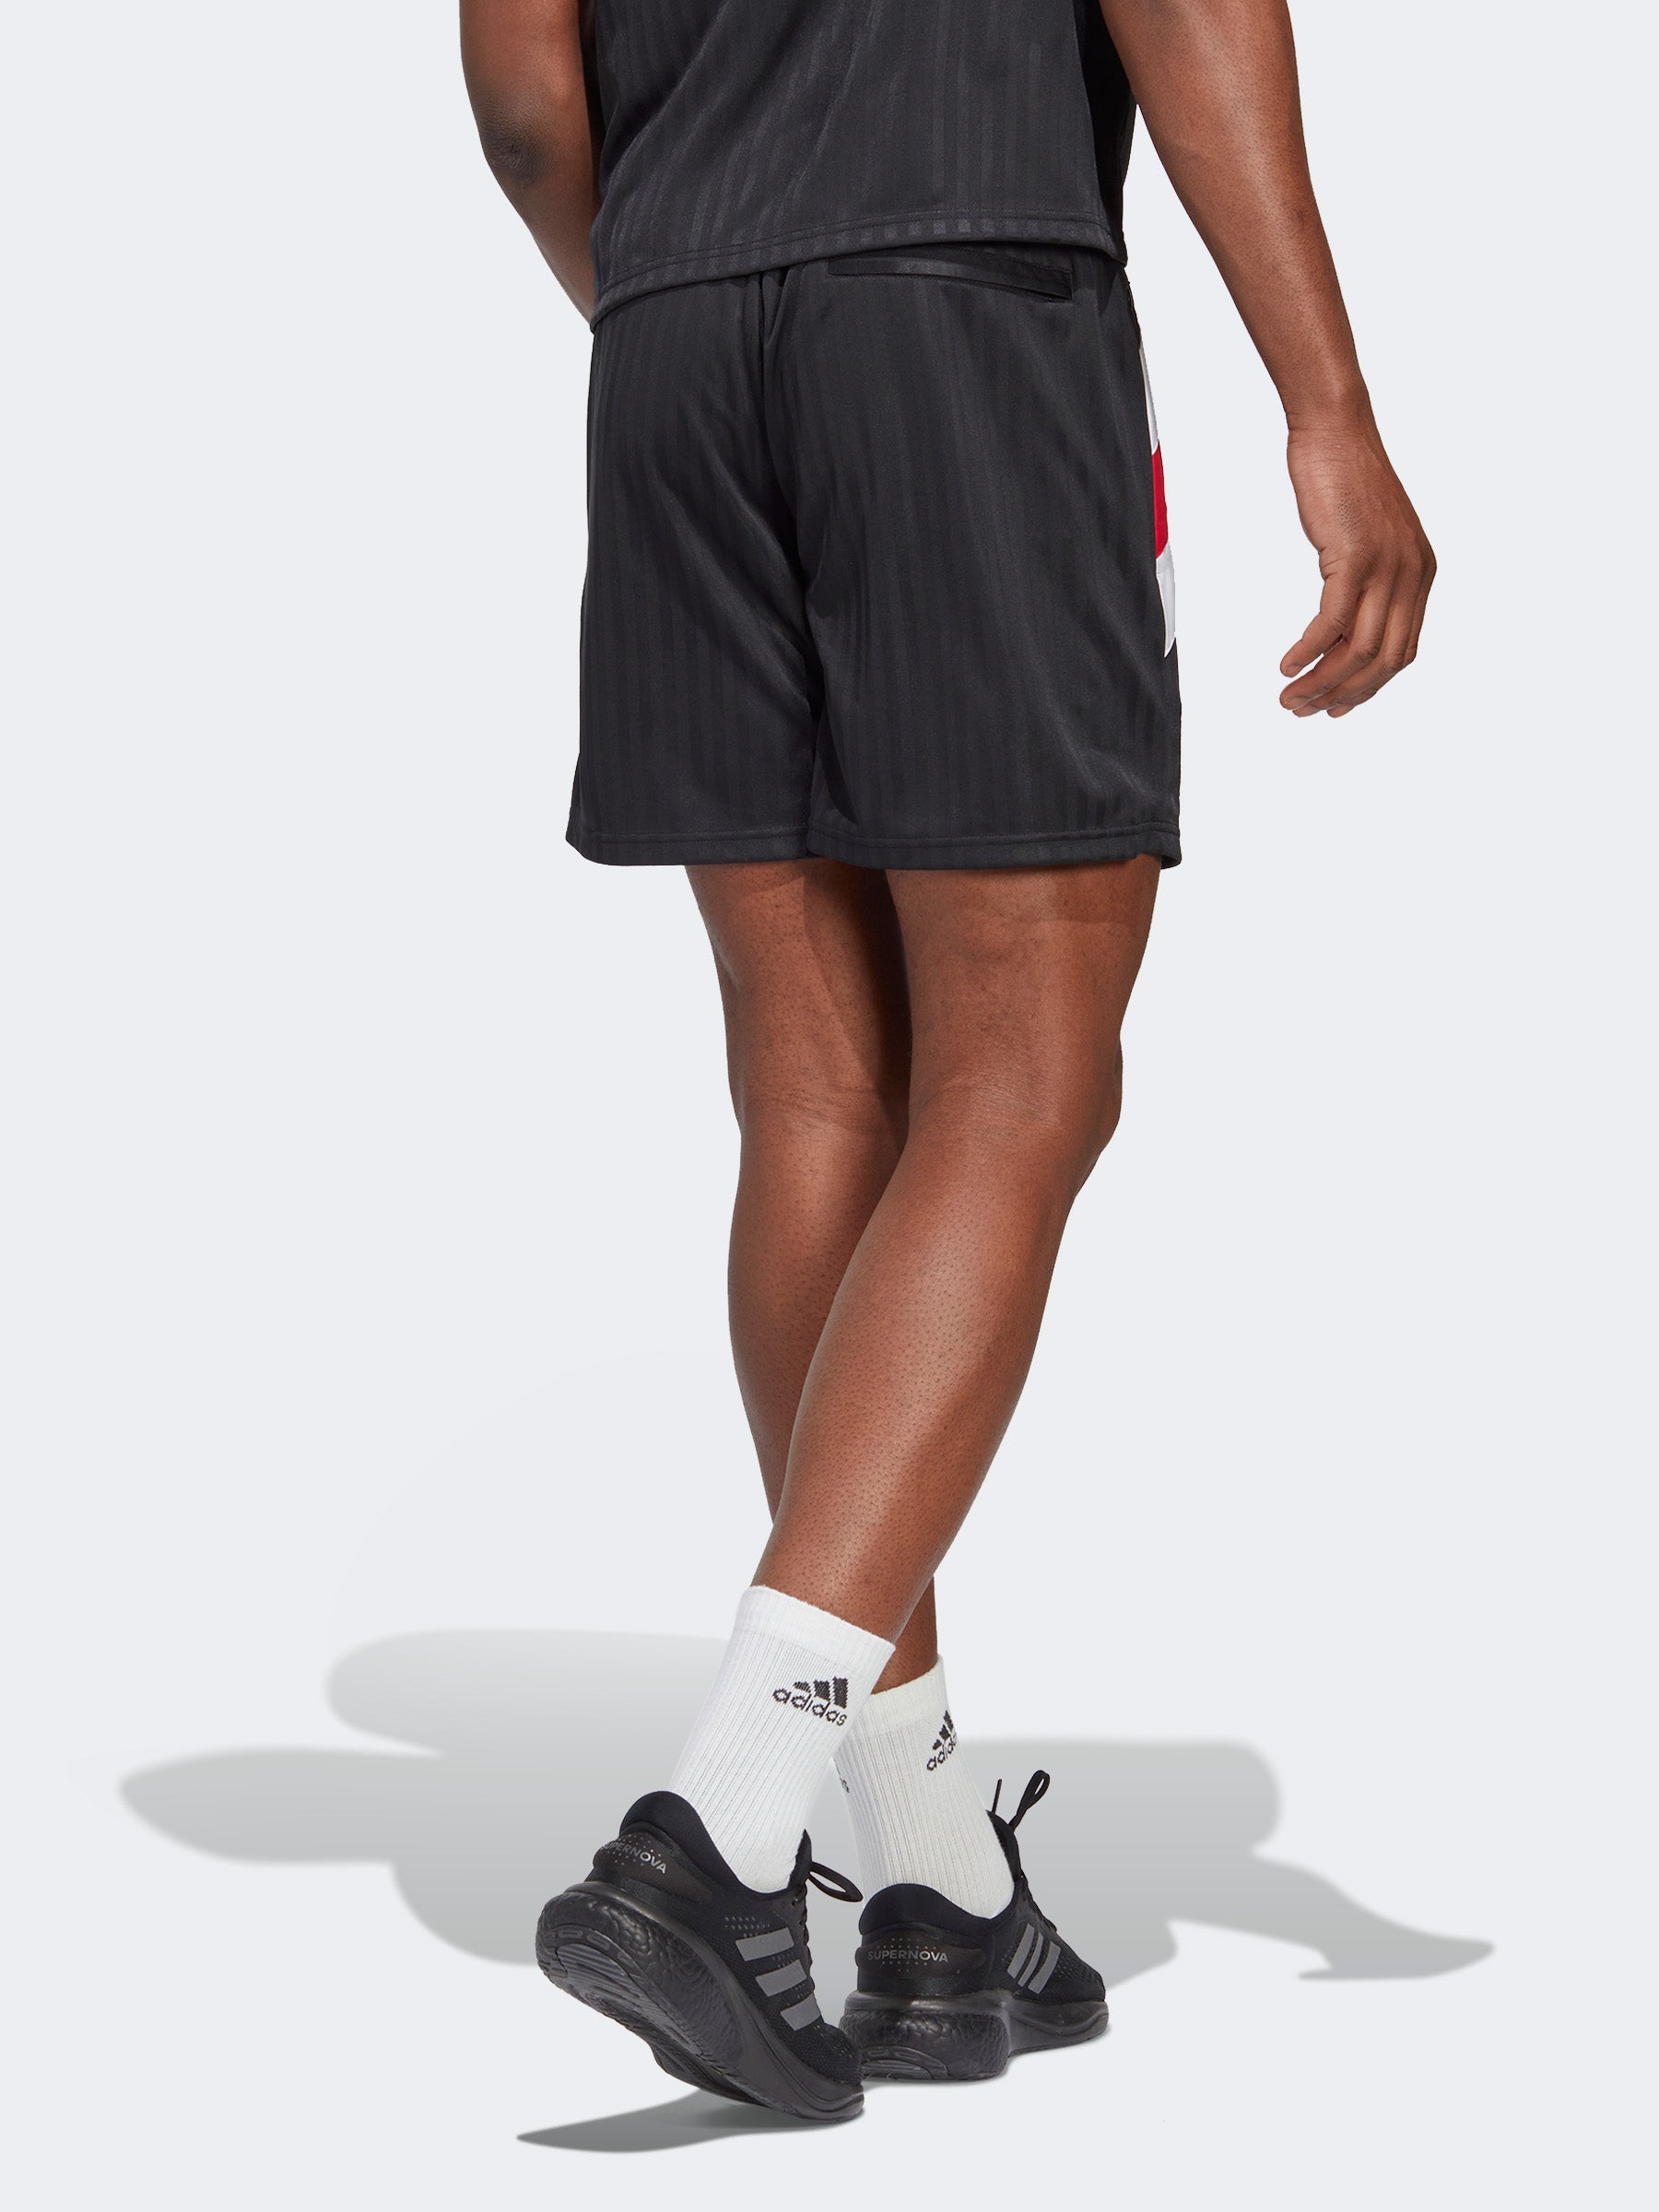 מכנסי אימון קצרים מנצ'סטר יונייטד- adidas performance|אדידס פרפורמנס